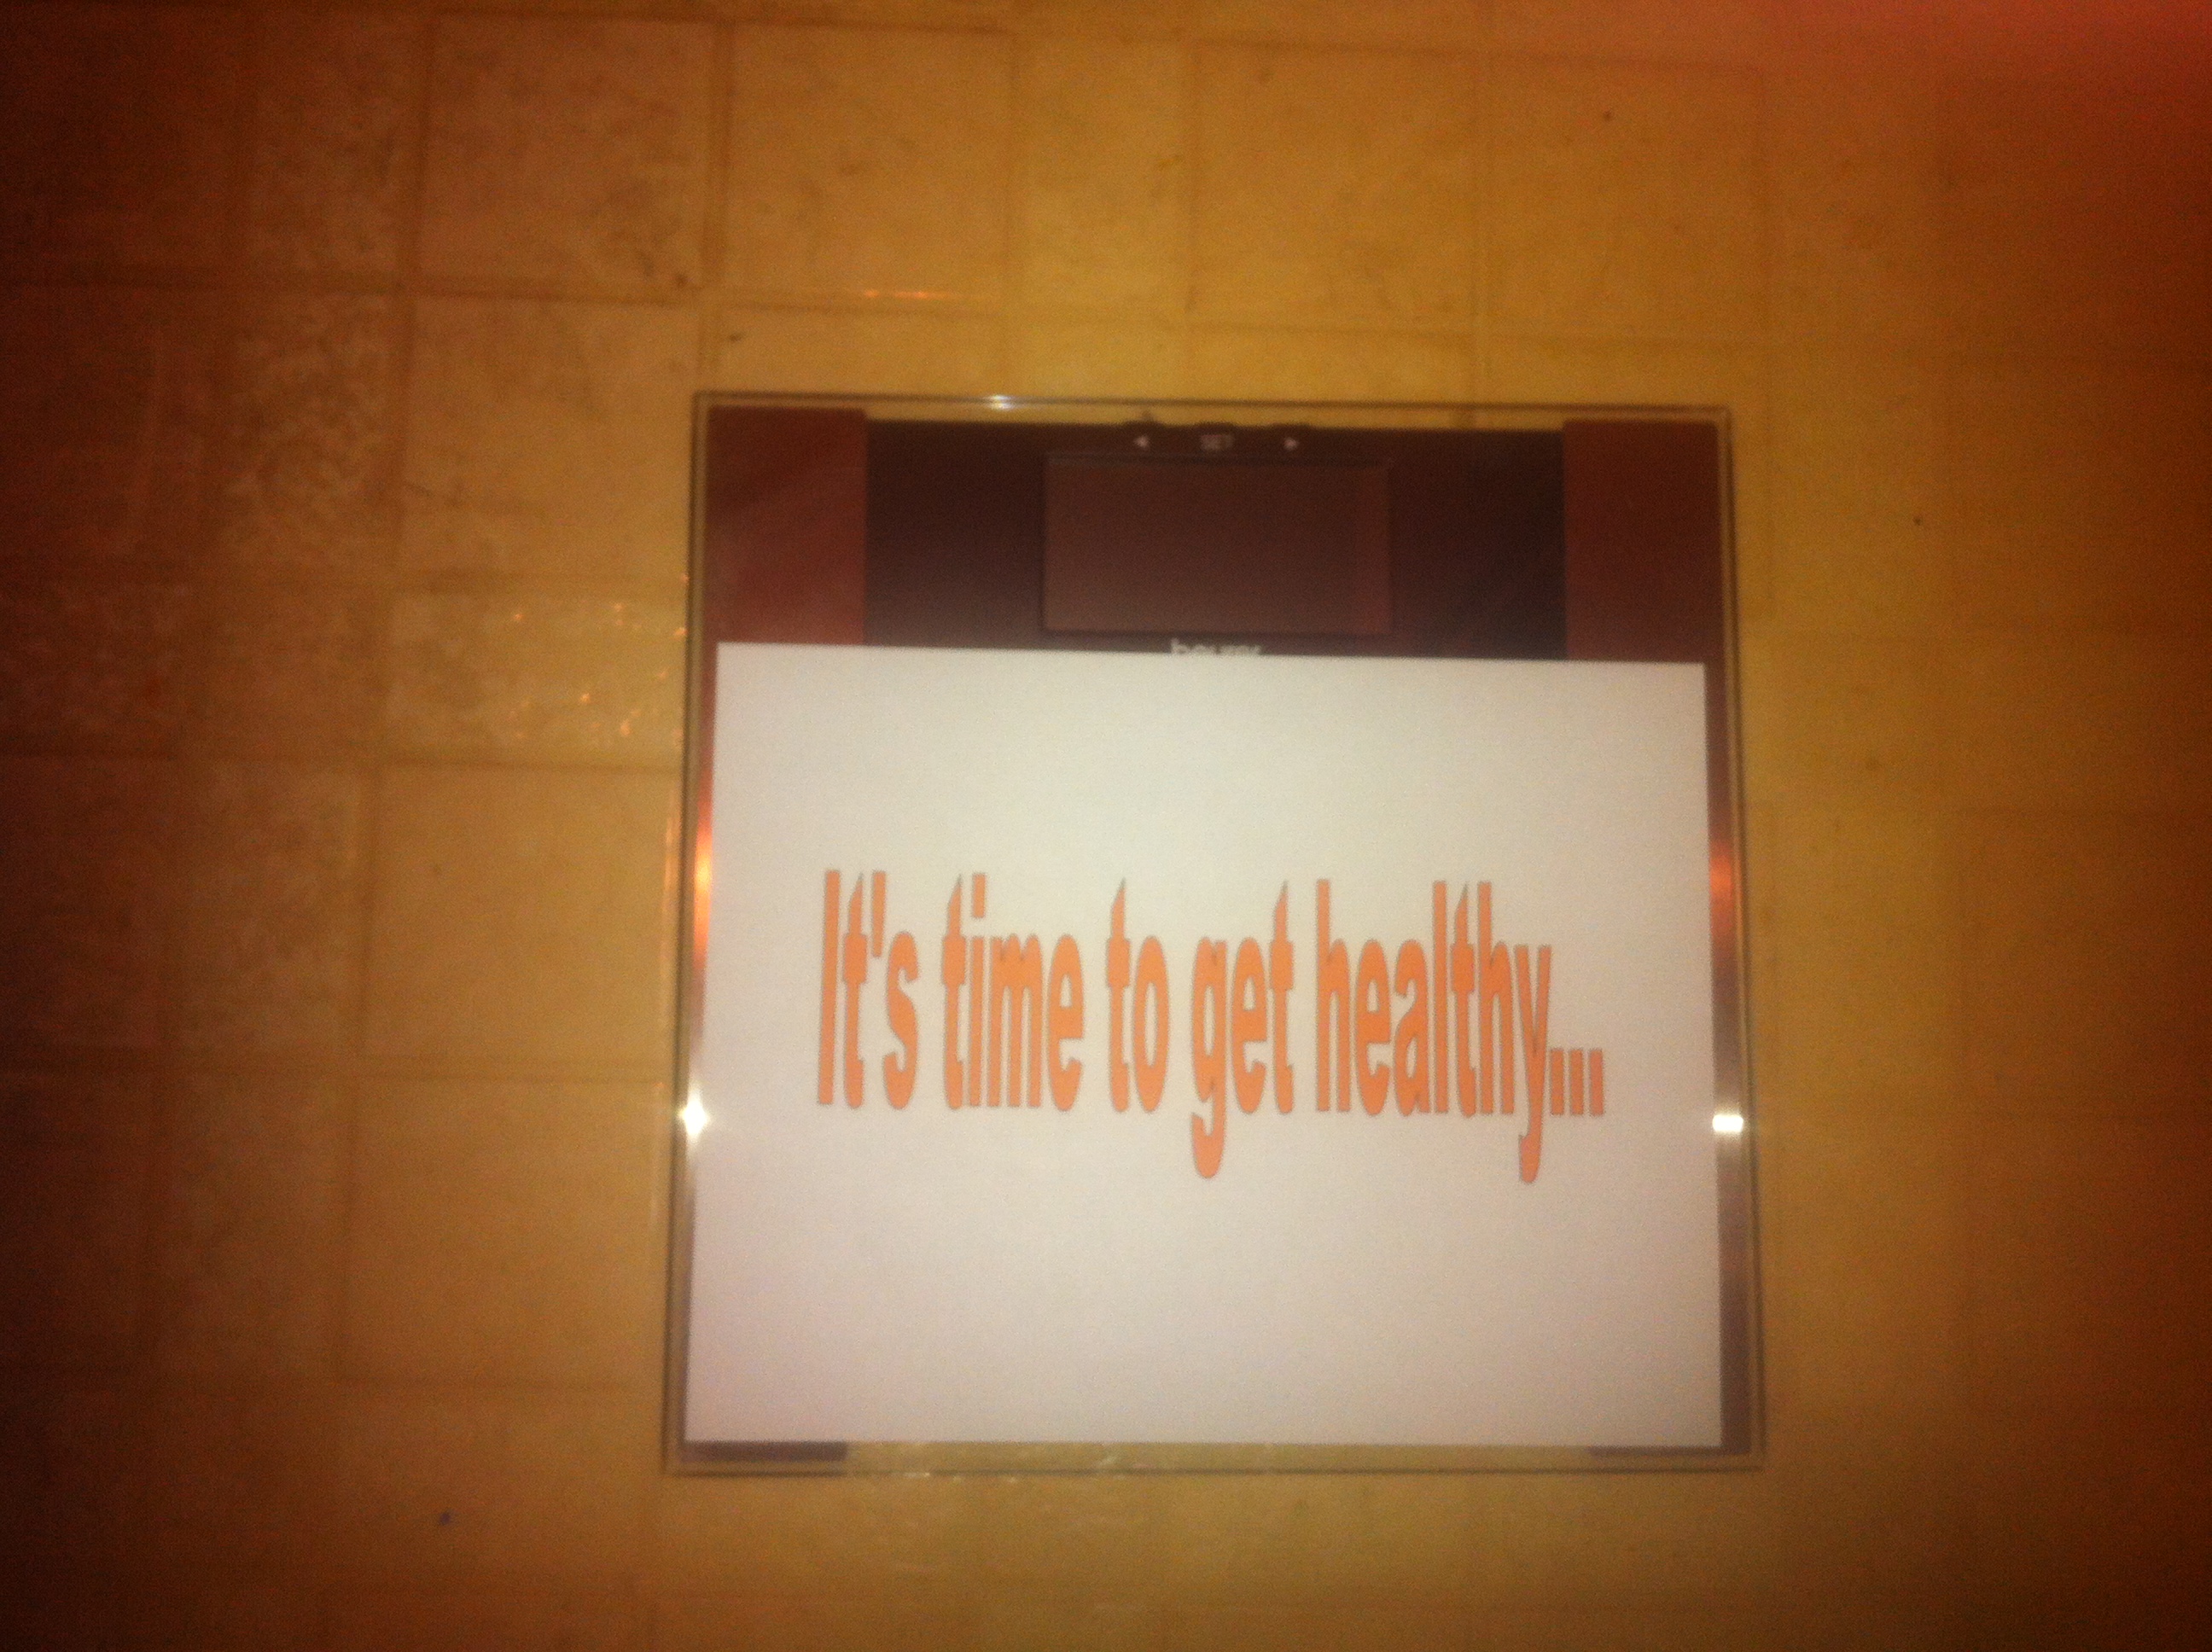 Get_Healthy